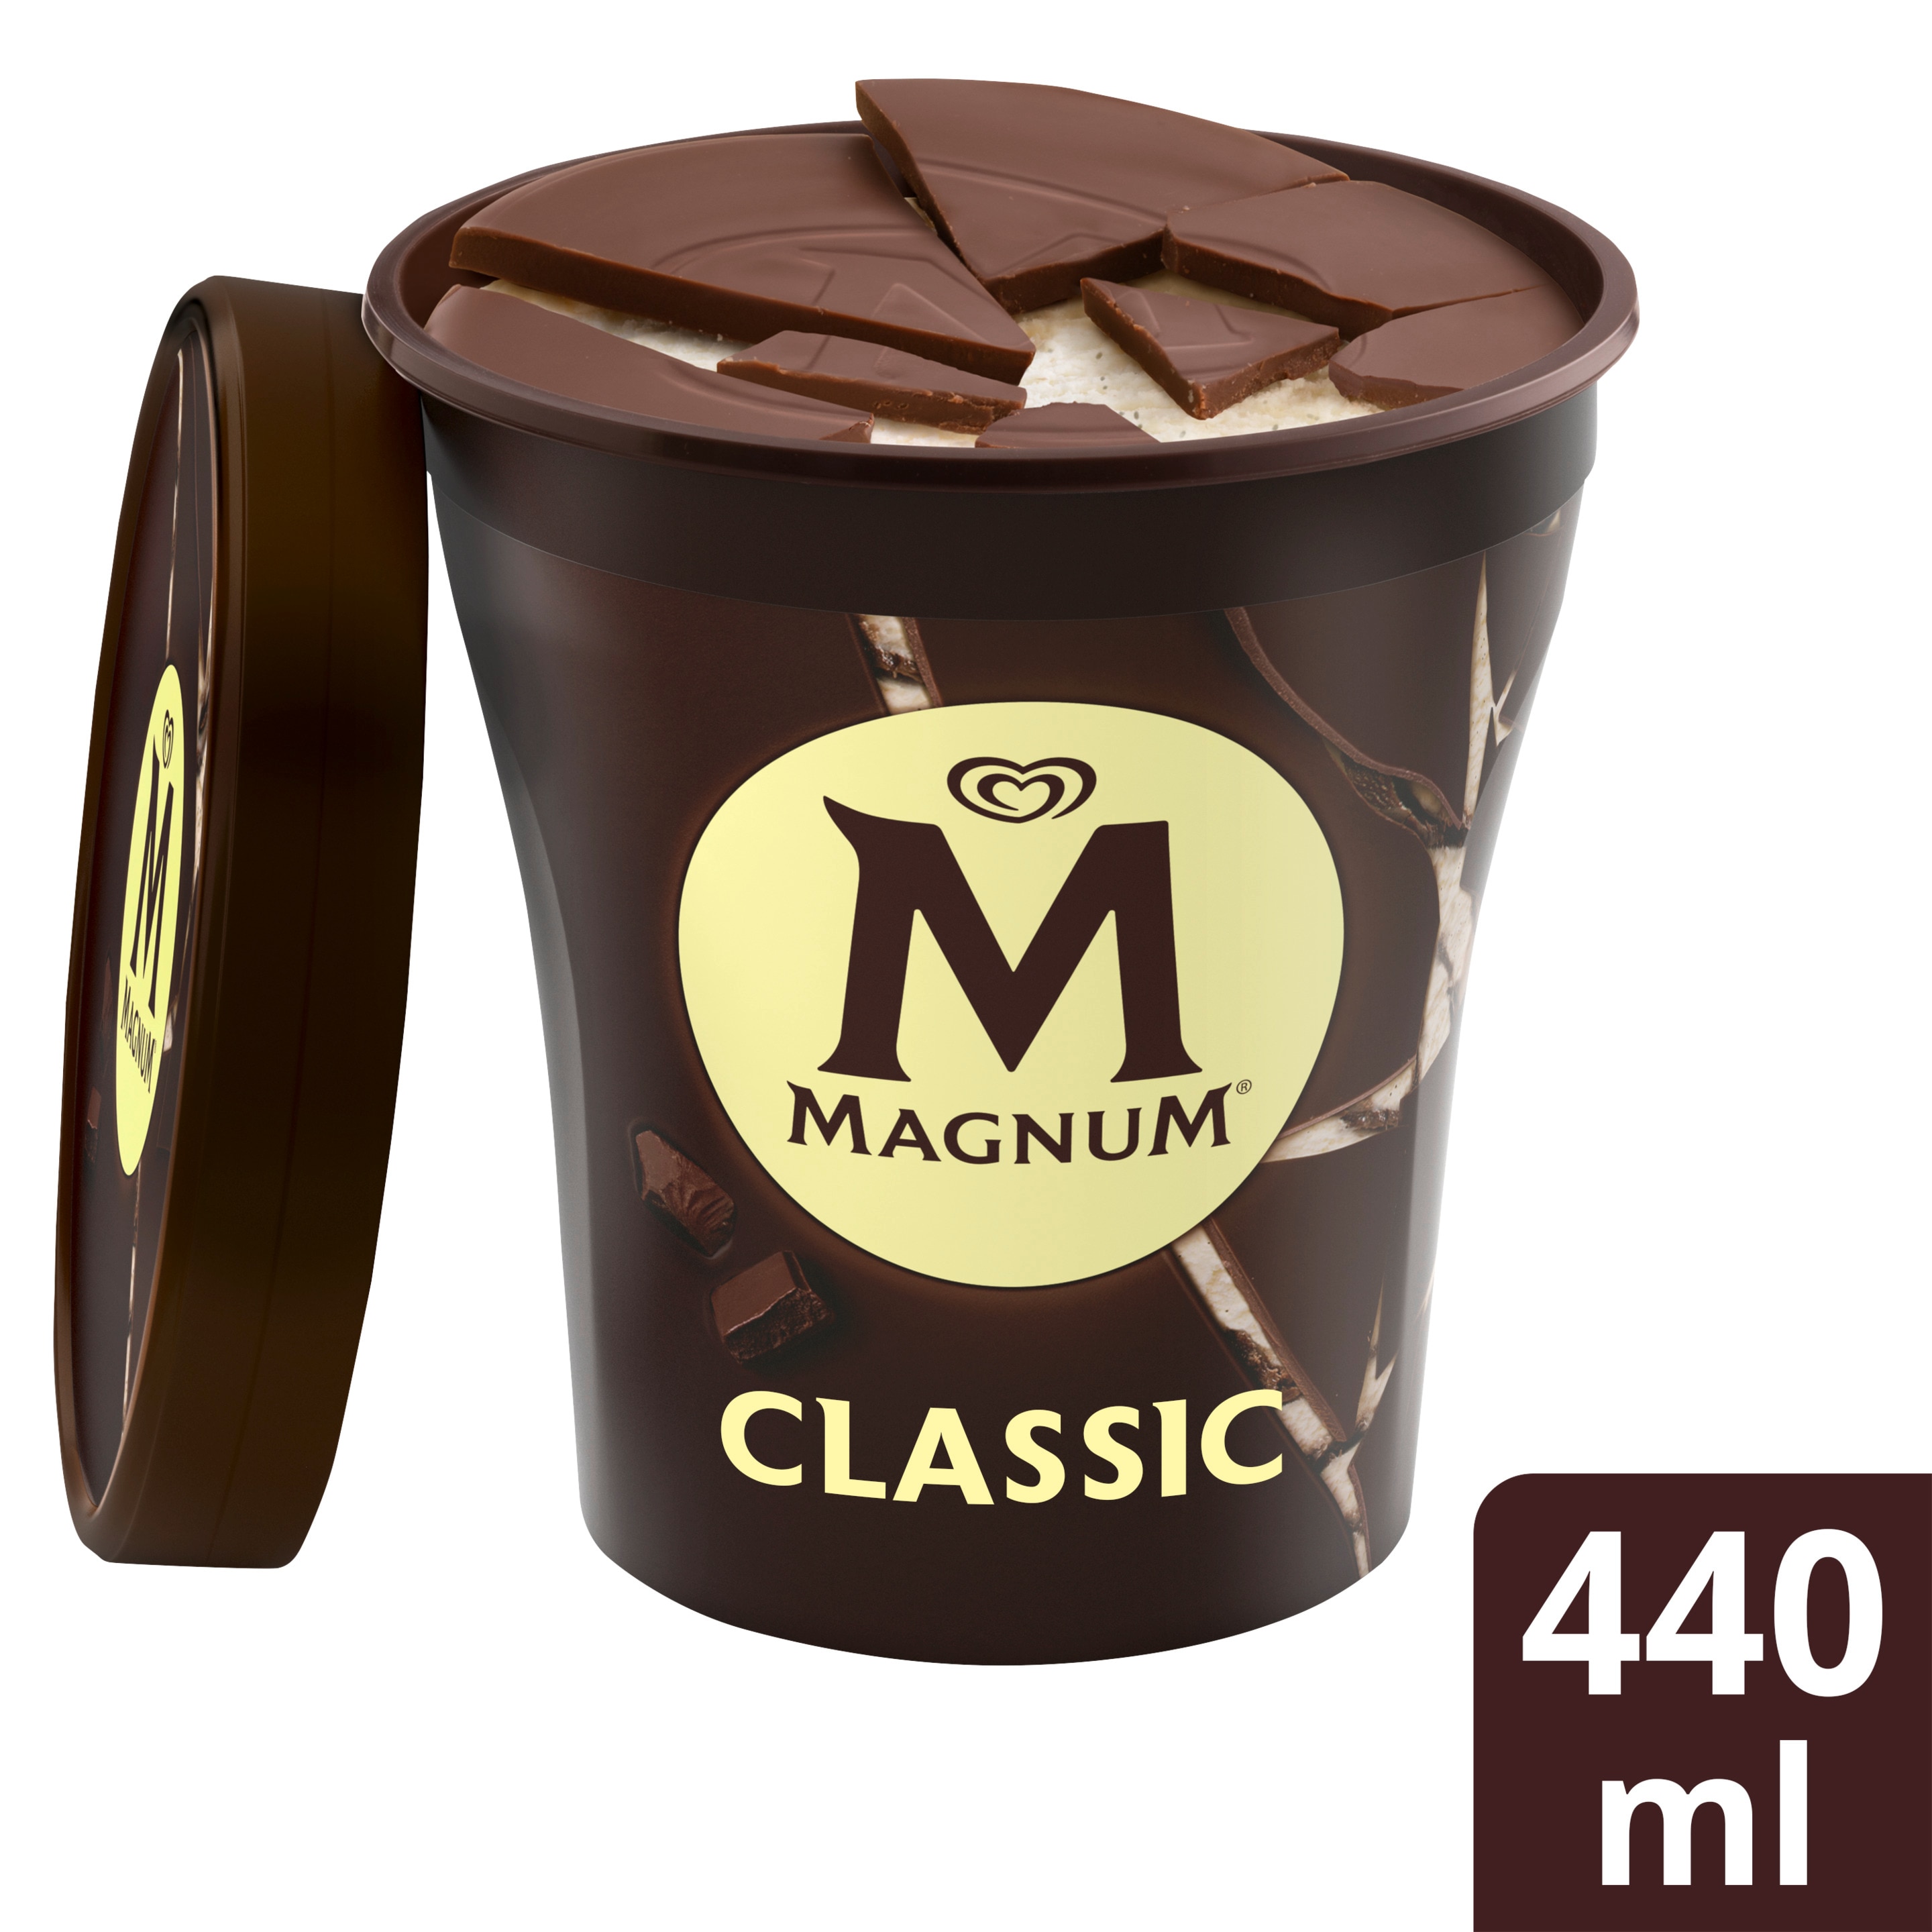 Magnum Classic Becher 440 ml